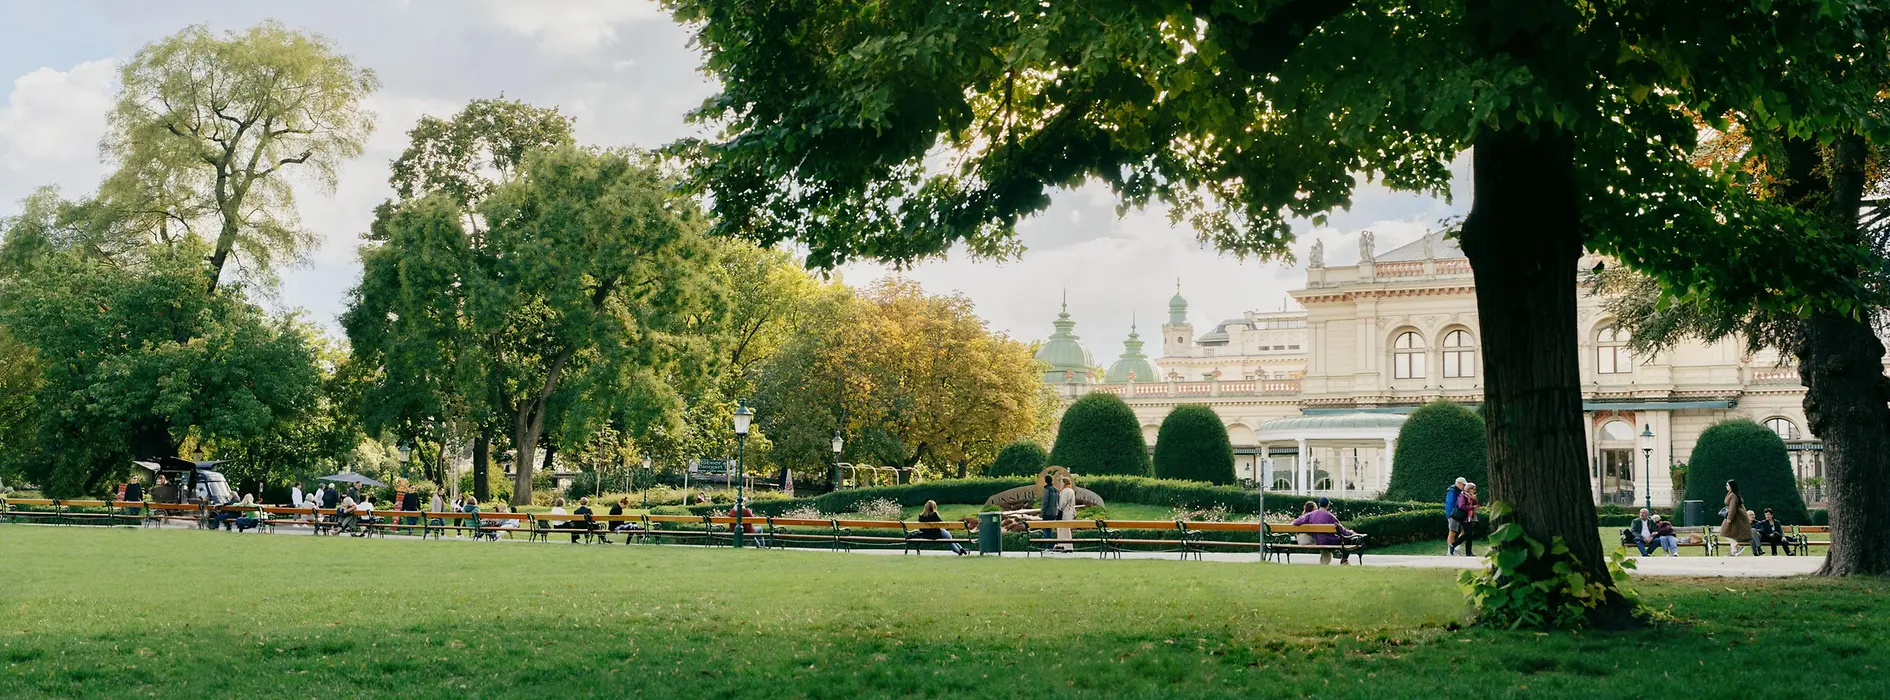 ウィーンの市立公園